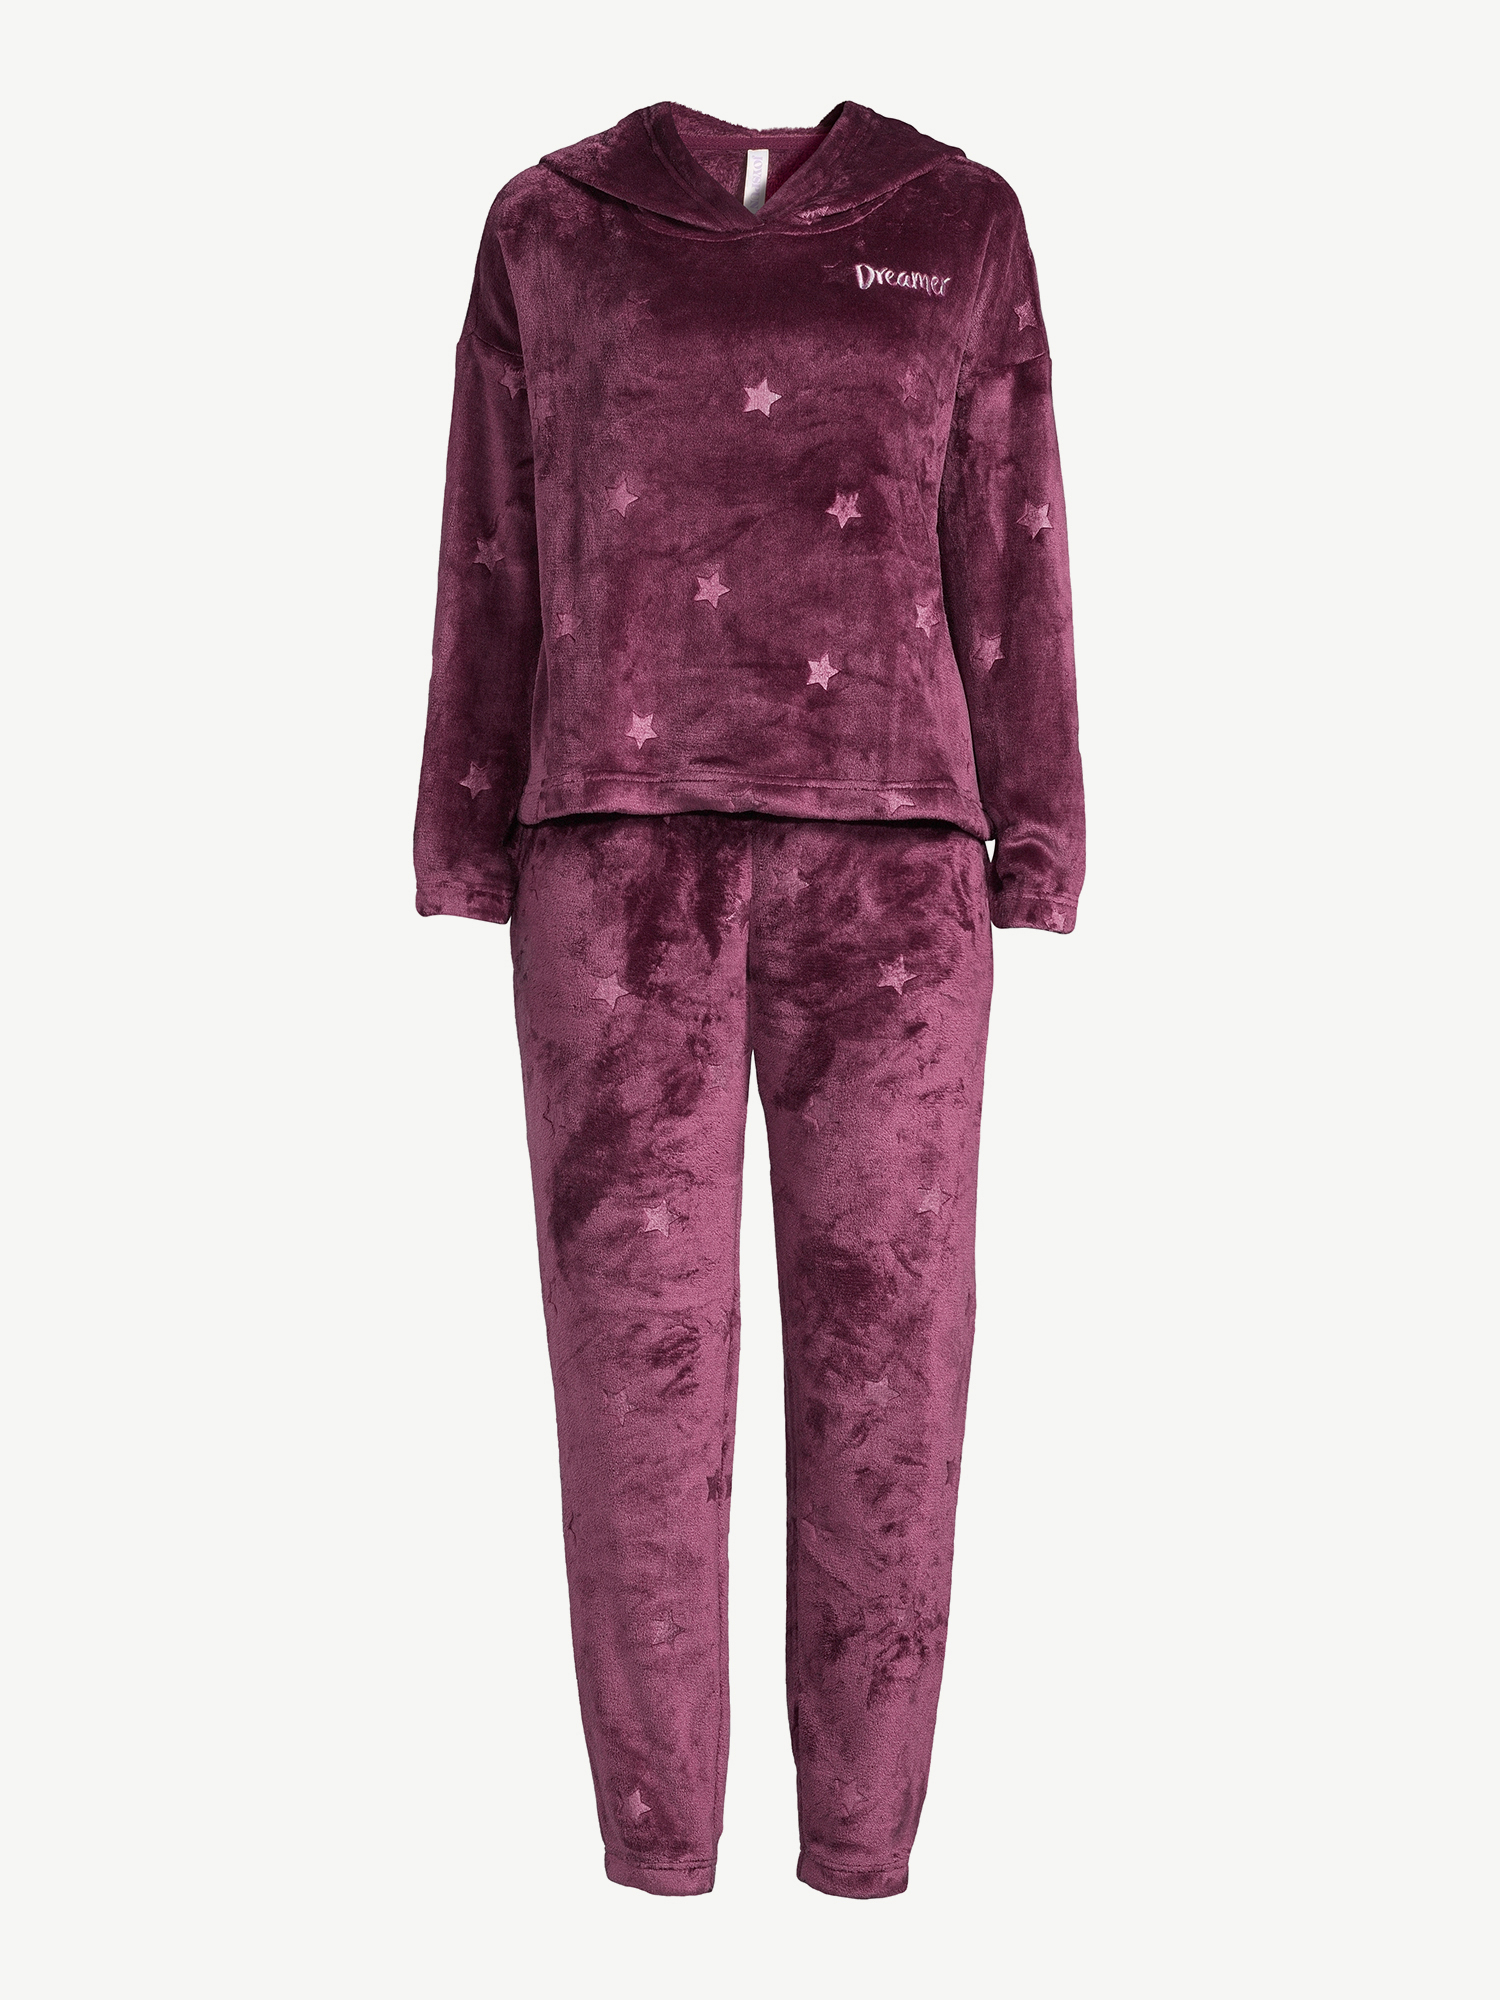 Joyspun Women's Star Print Plush Hoodie and Pants Pajama Set, 2-Piece ...